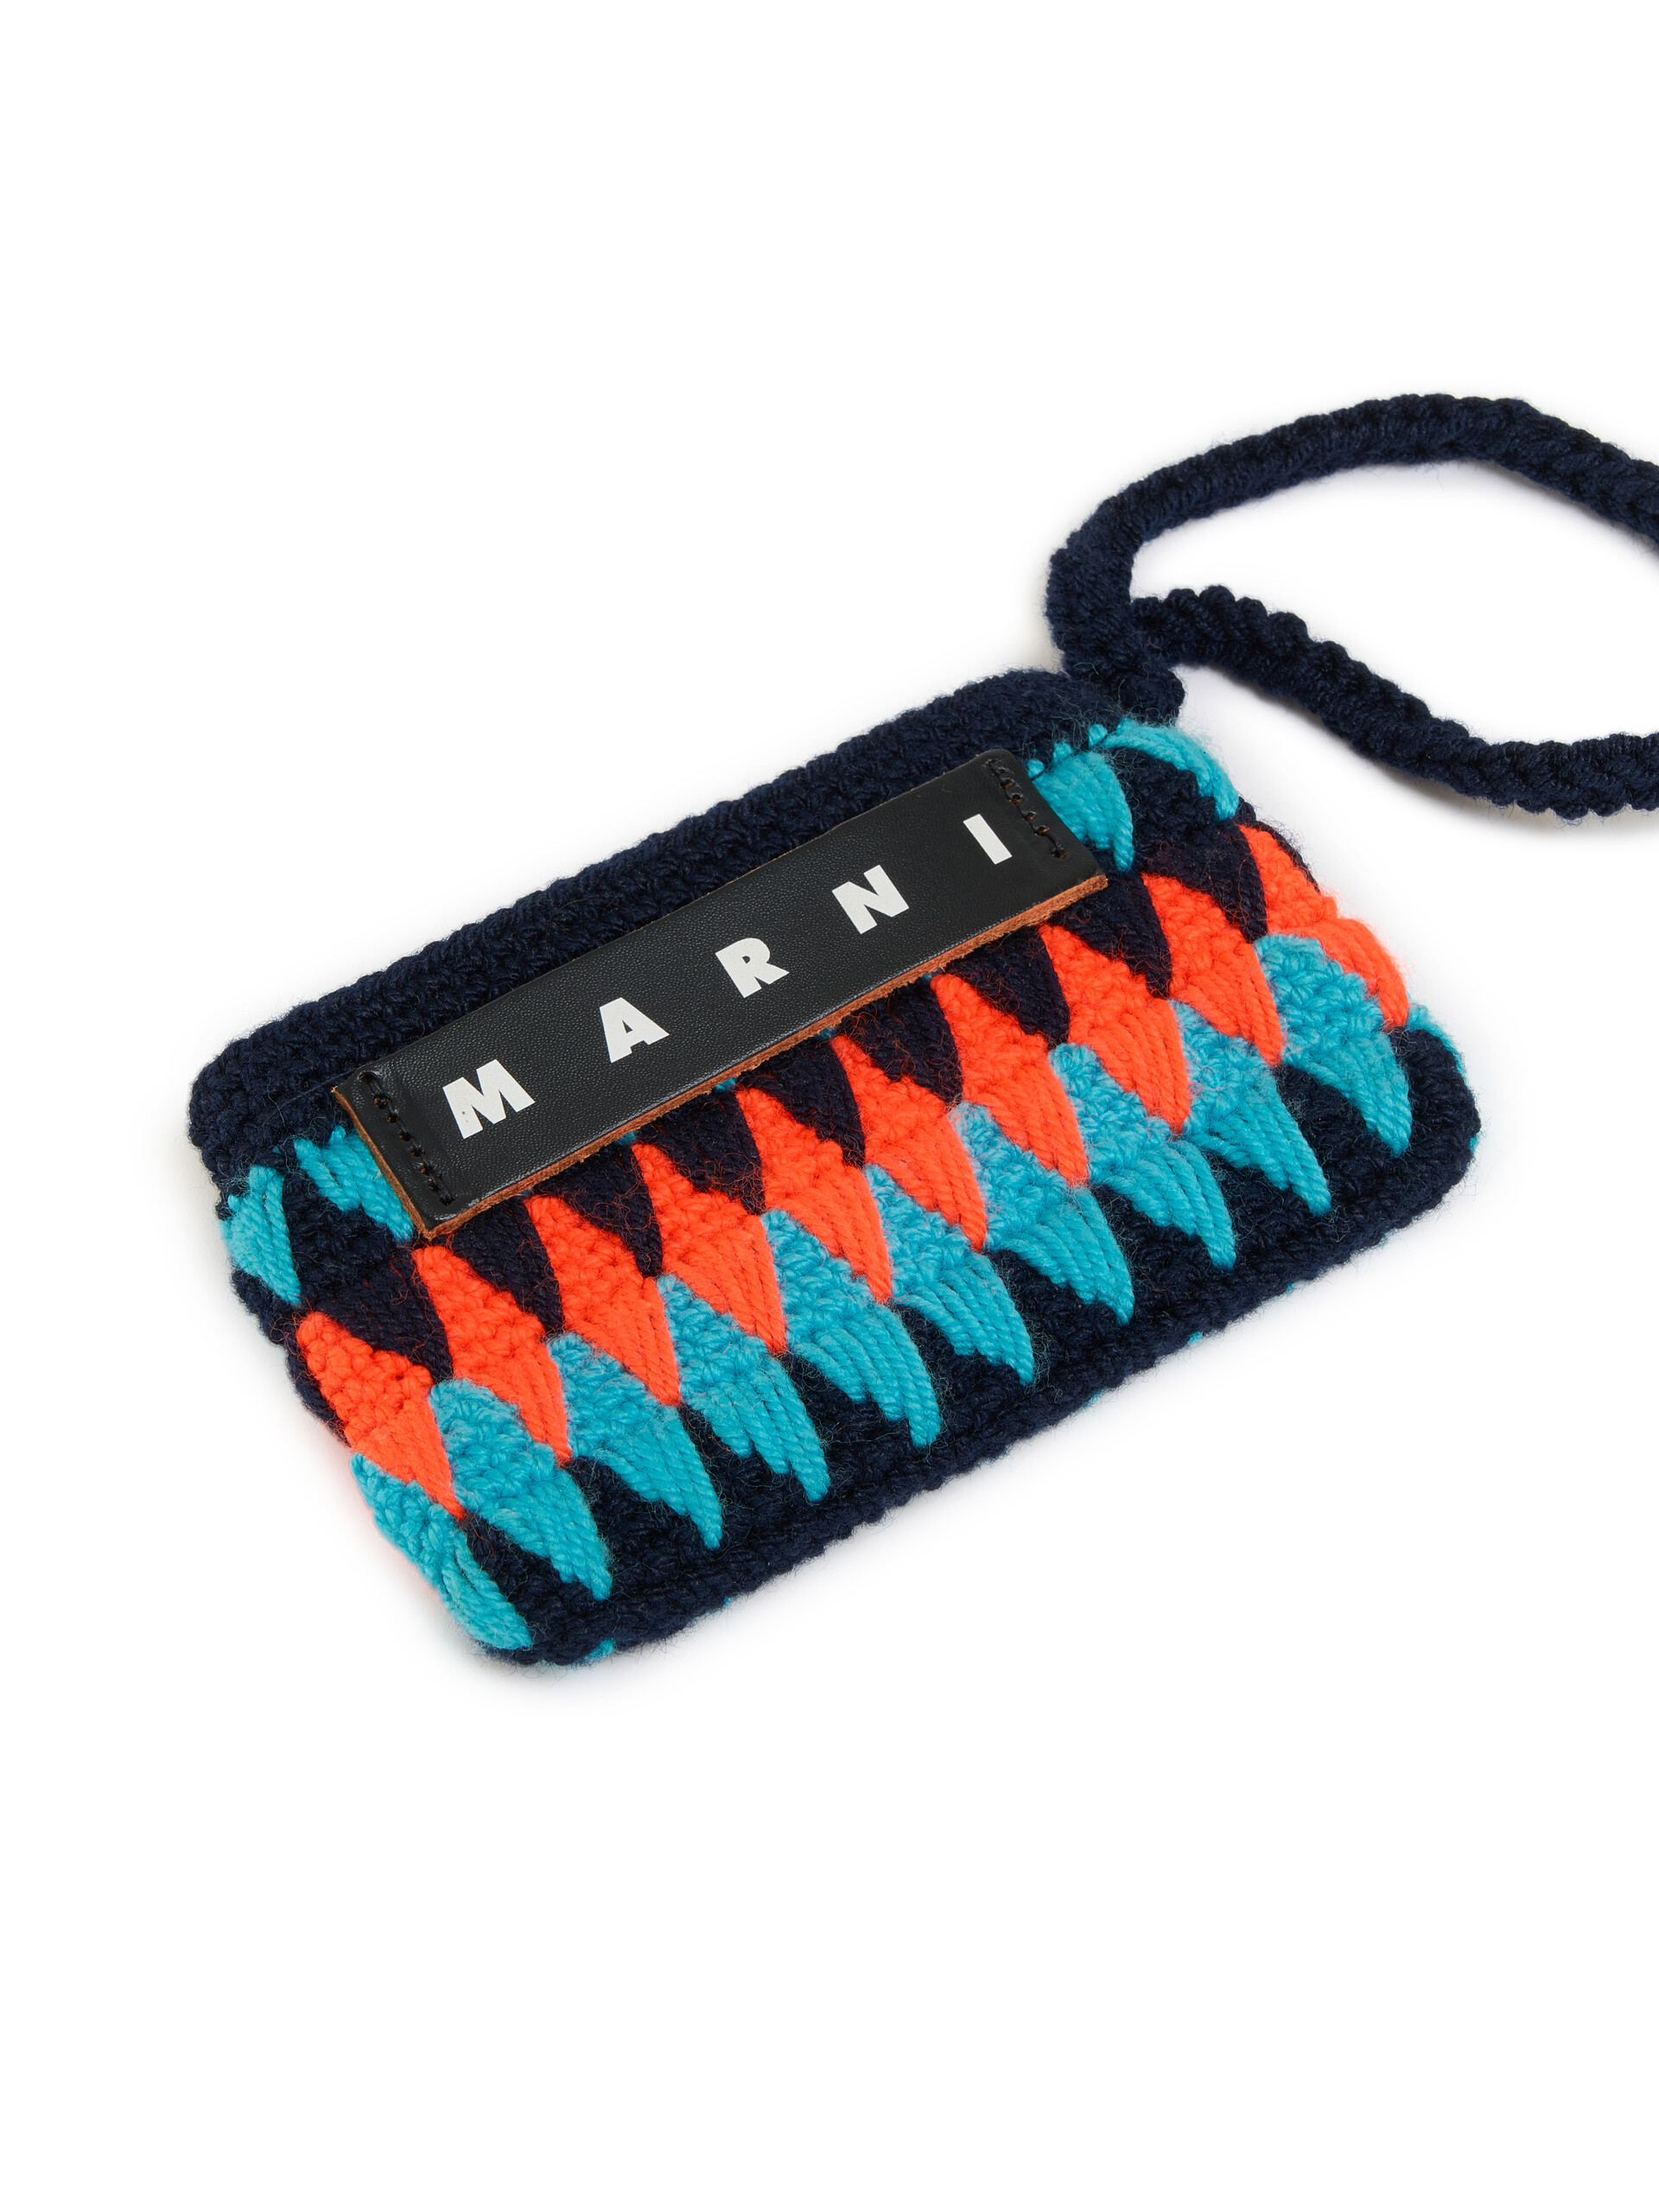 Mini-pochette Marni Market Chessboard noire réalisée au crochet - Accessoires - Image 3